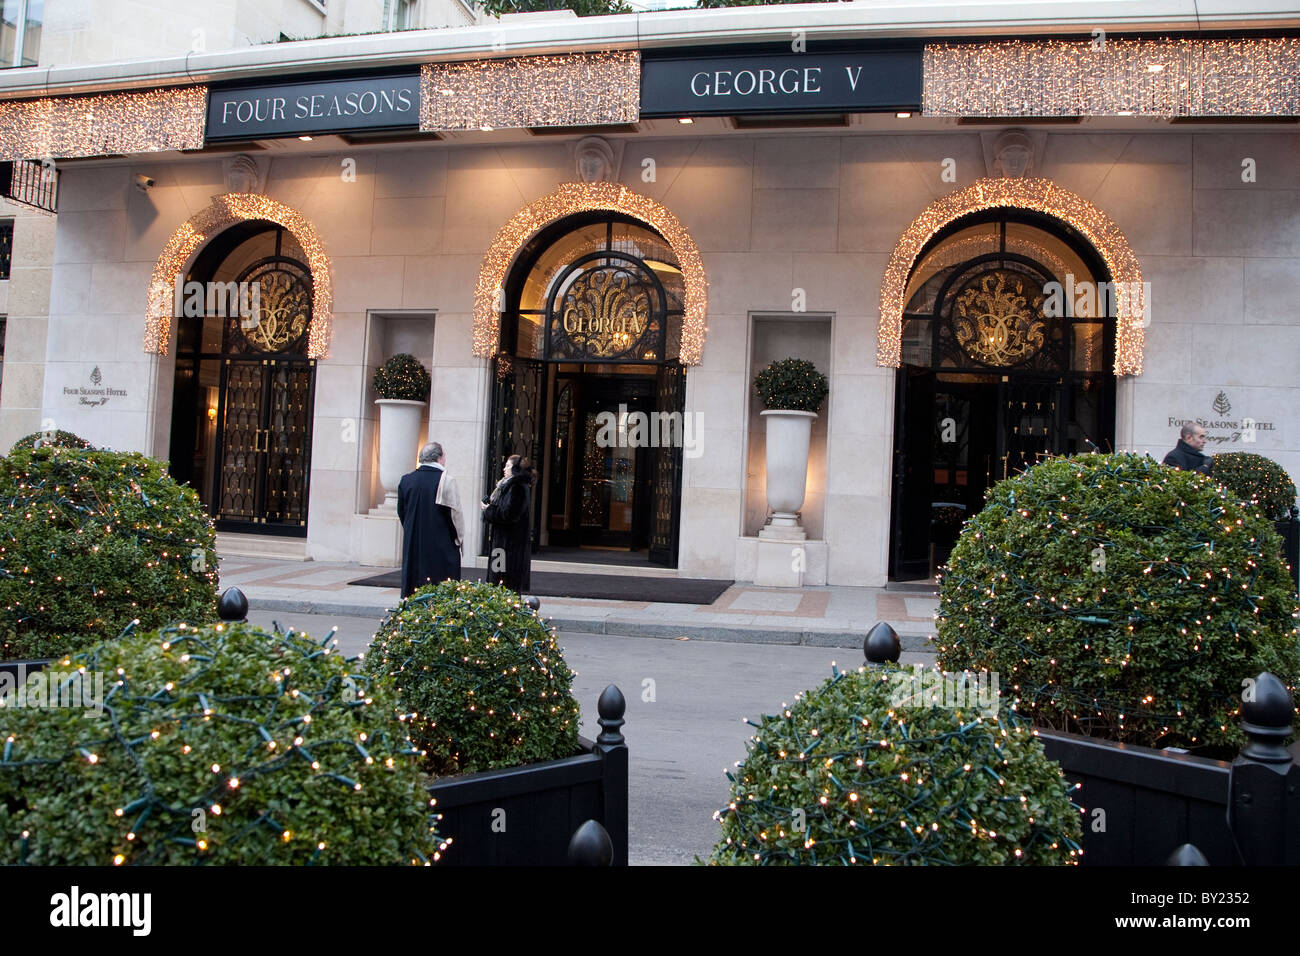 Entrée de l'hôtel Four Seasons George V à Paris illuminé la nuit, France Banque D'Images